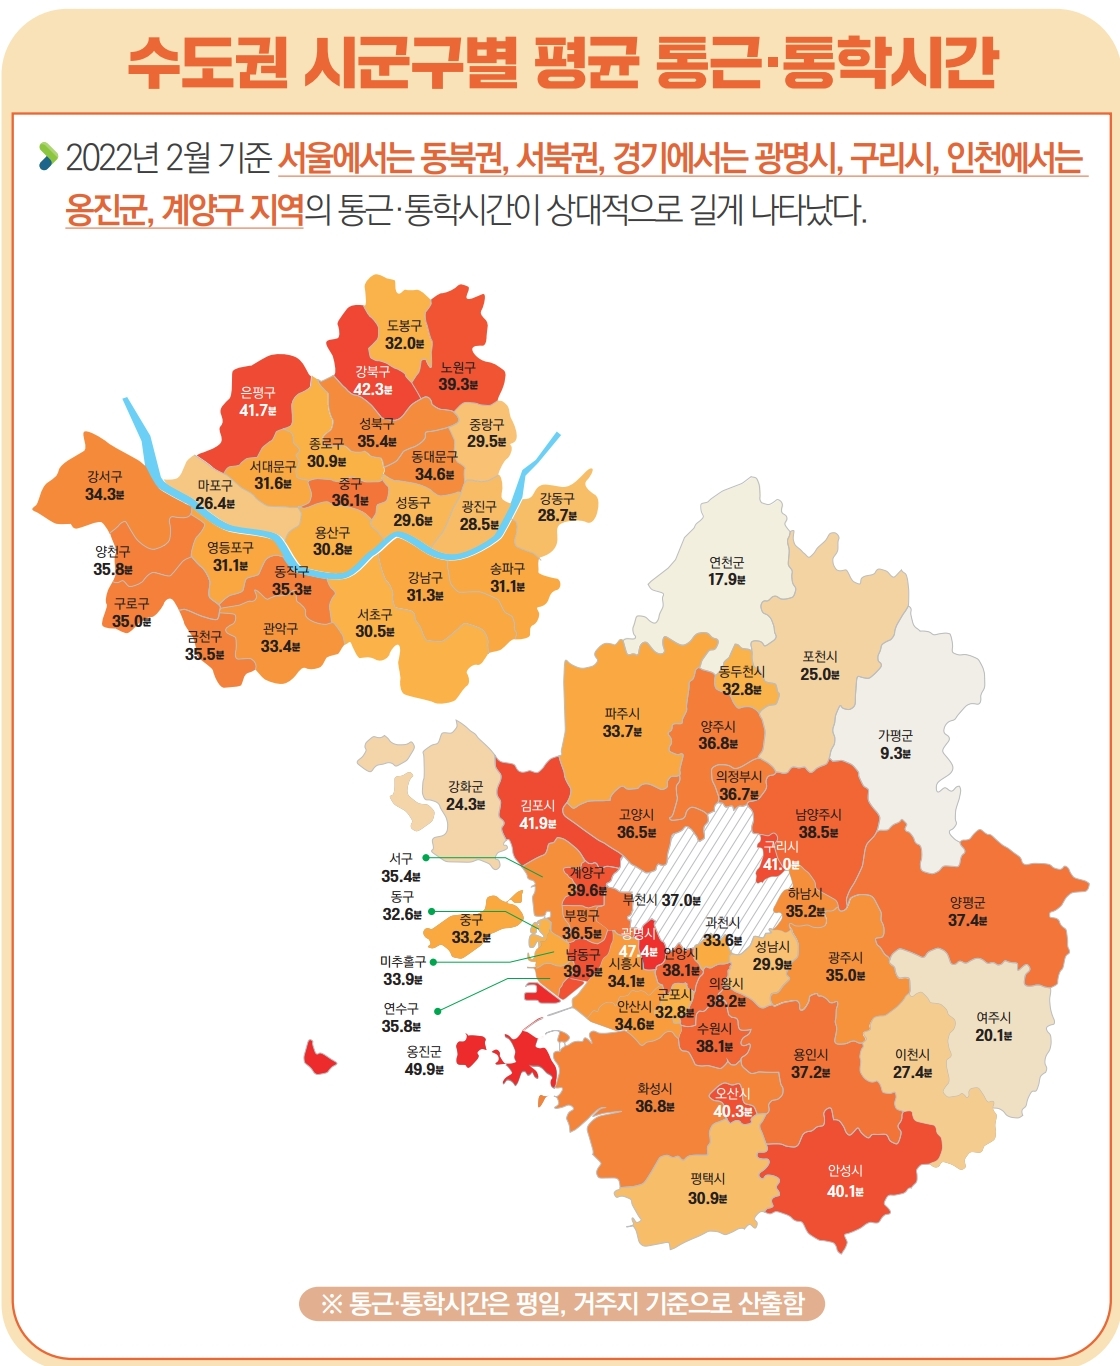 2022년 2월 기준 서울에서는 동북권, 서북권, 경기에서는 광명시, 구리시, 인천에서는 옹진군, 계양구 지역의 통근·통학시간이 상대적으로 길게 나타났다.